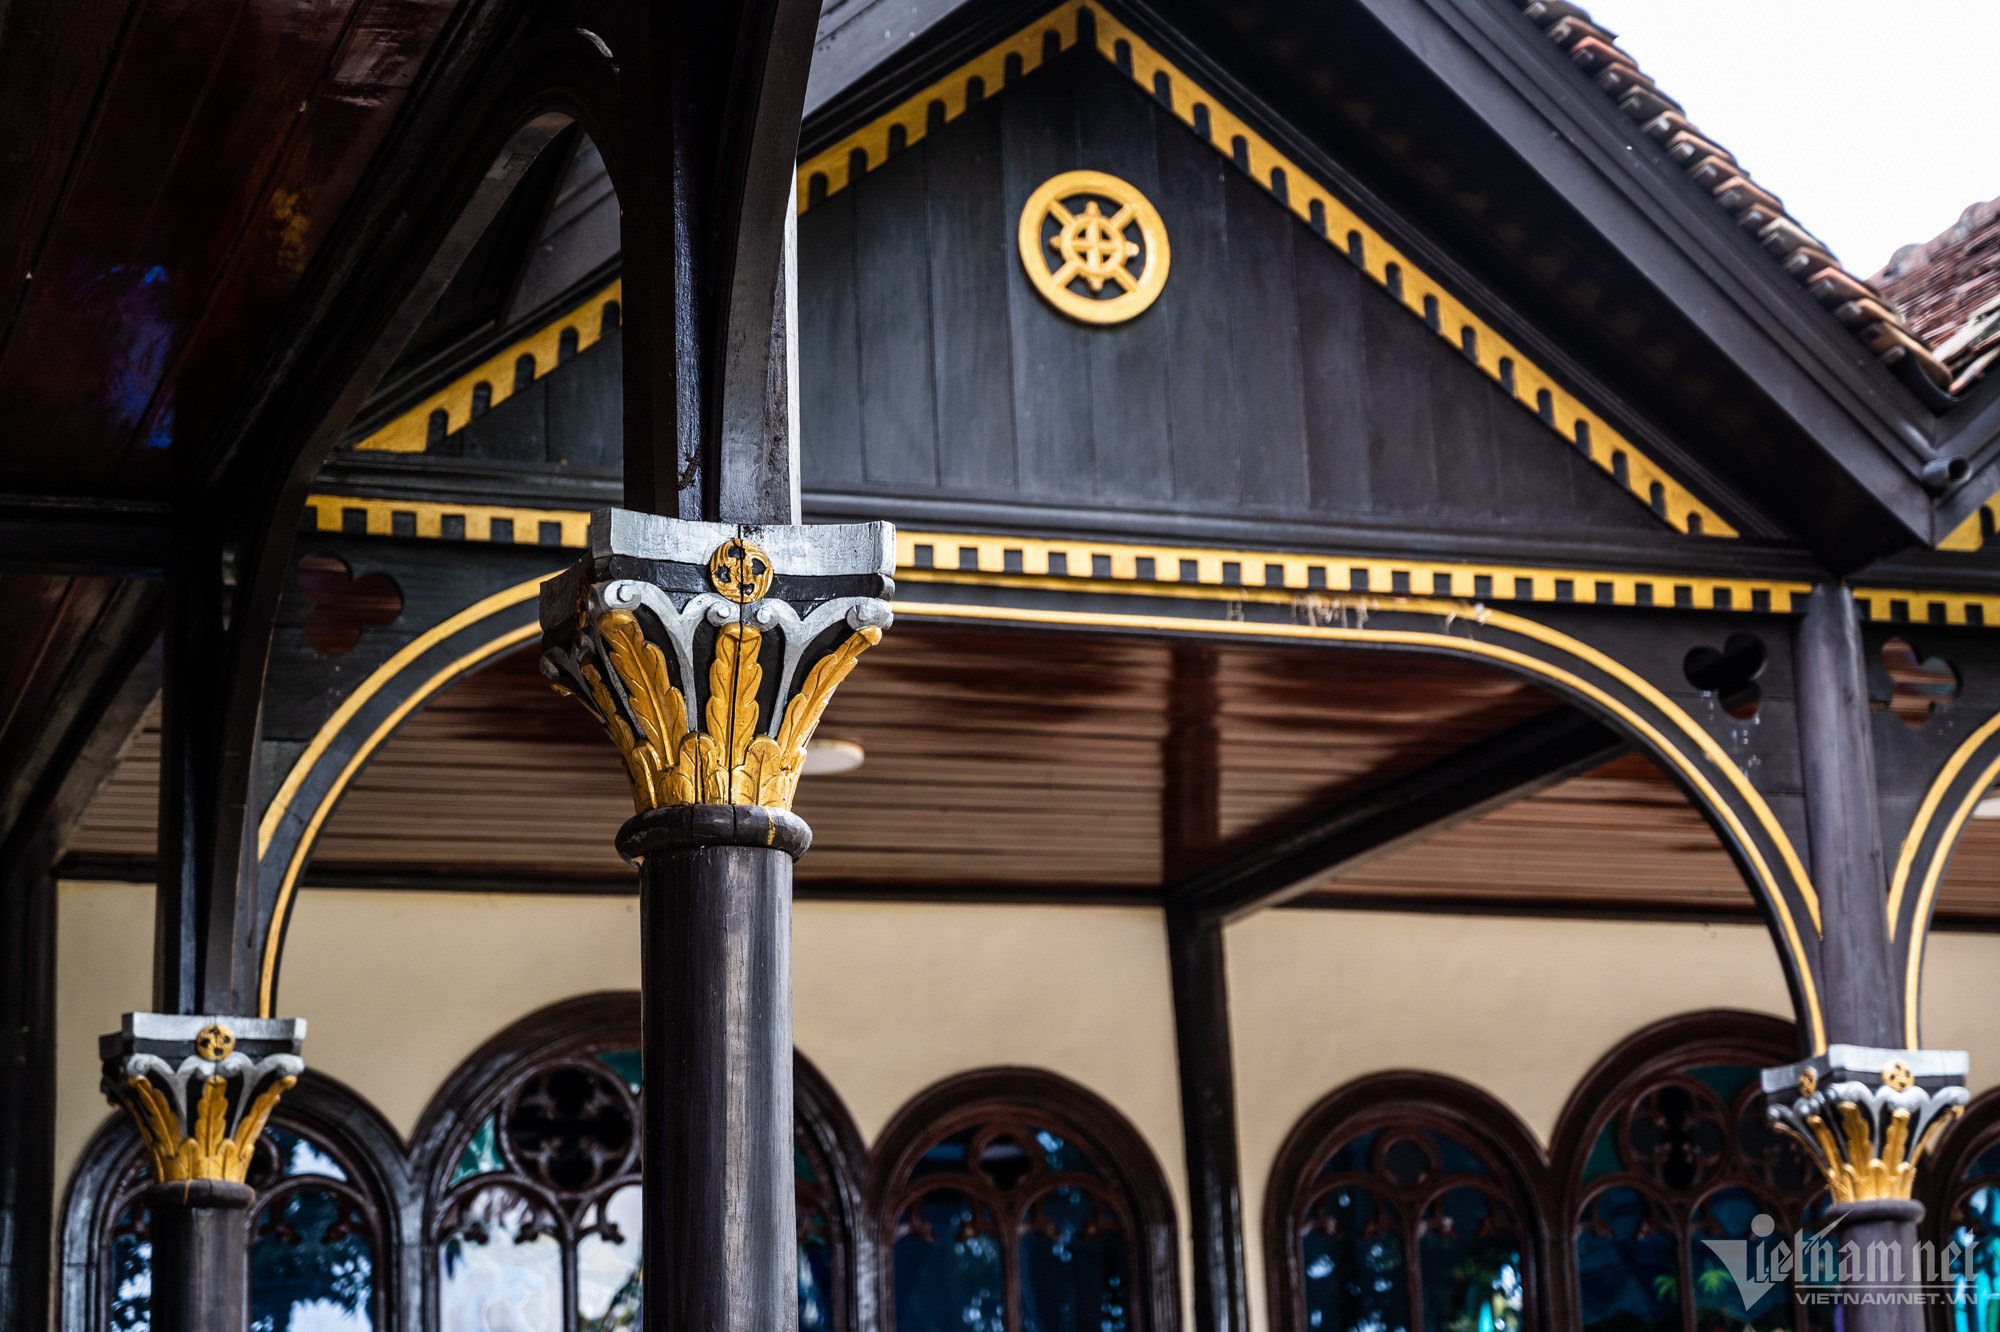 Nhà thờ tuyệt đẹp hoàn toàn bằng gỗ, hơn 100 năm vẫn nguyên vẹn ở Kon Tum